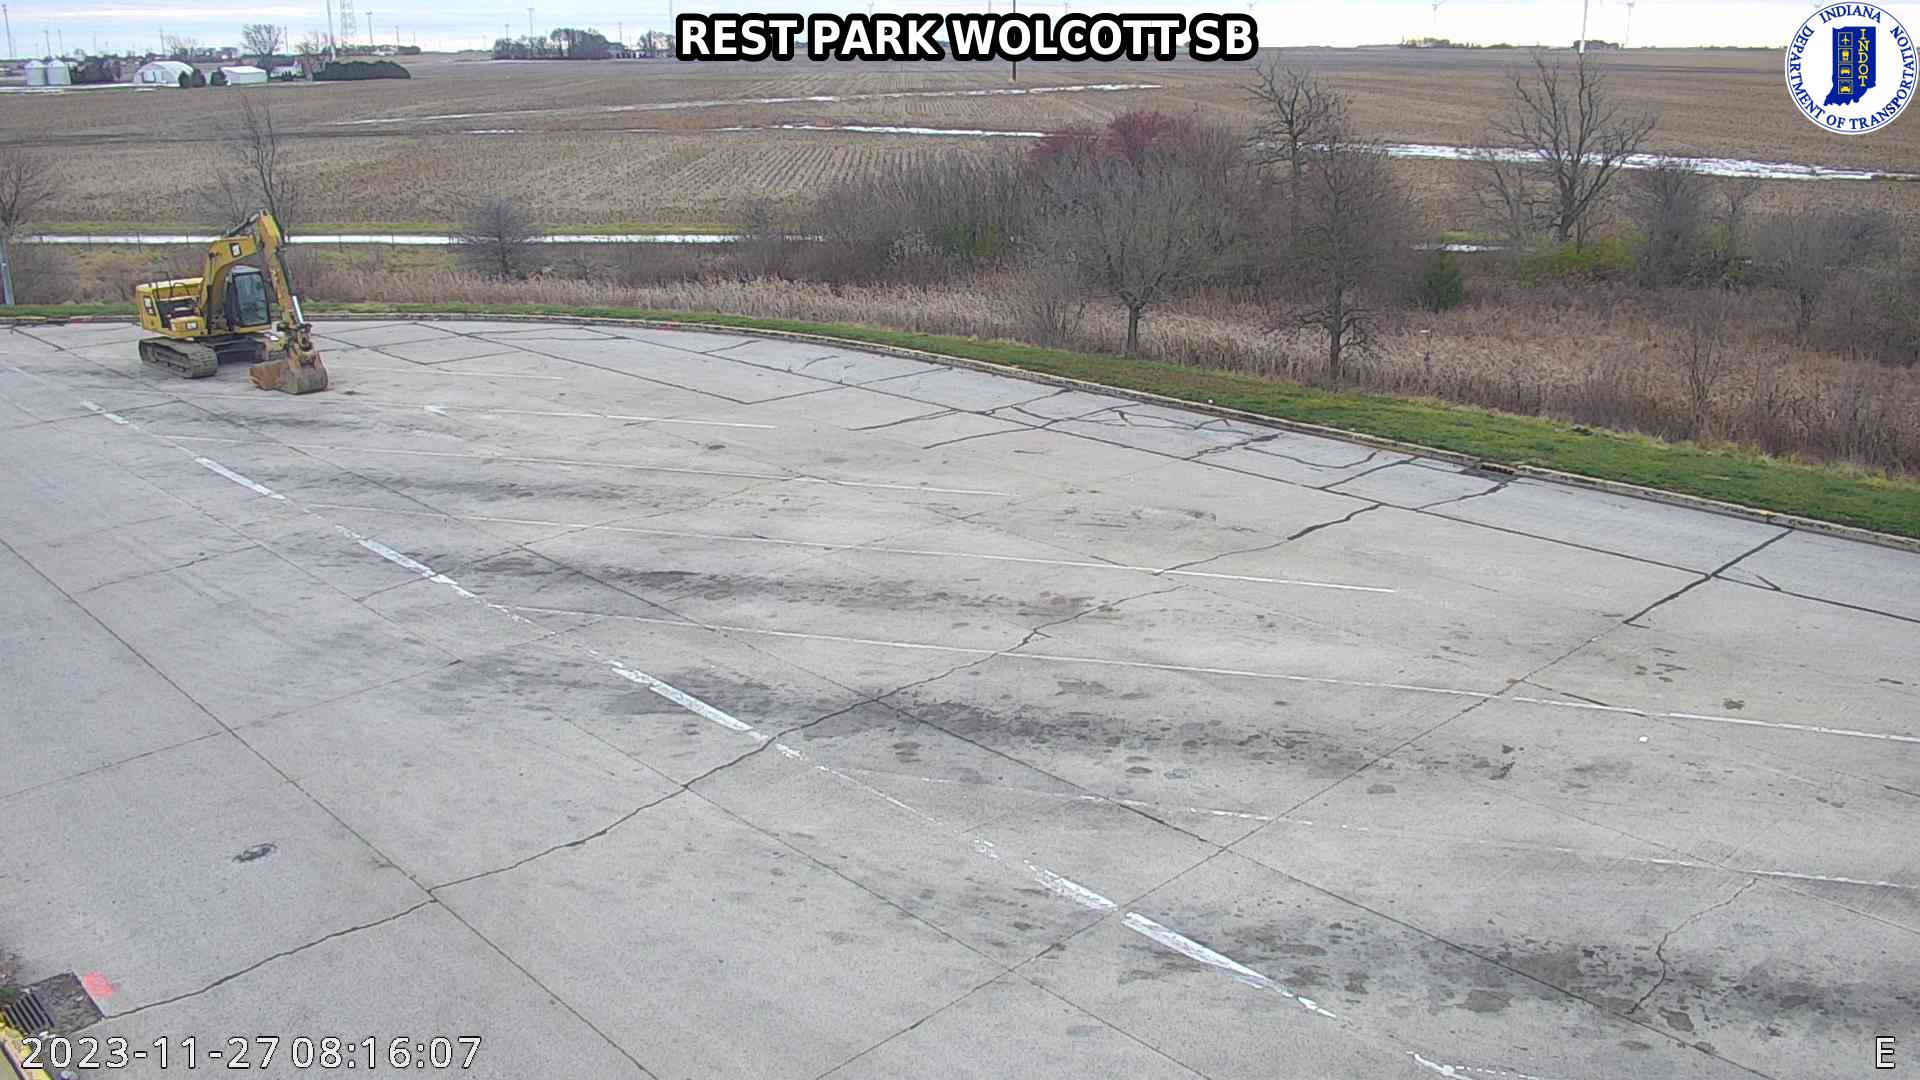 Wolcott: I-65: REST PARK - SB Traffic Camera